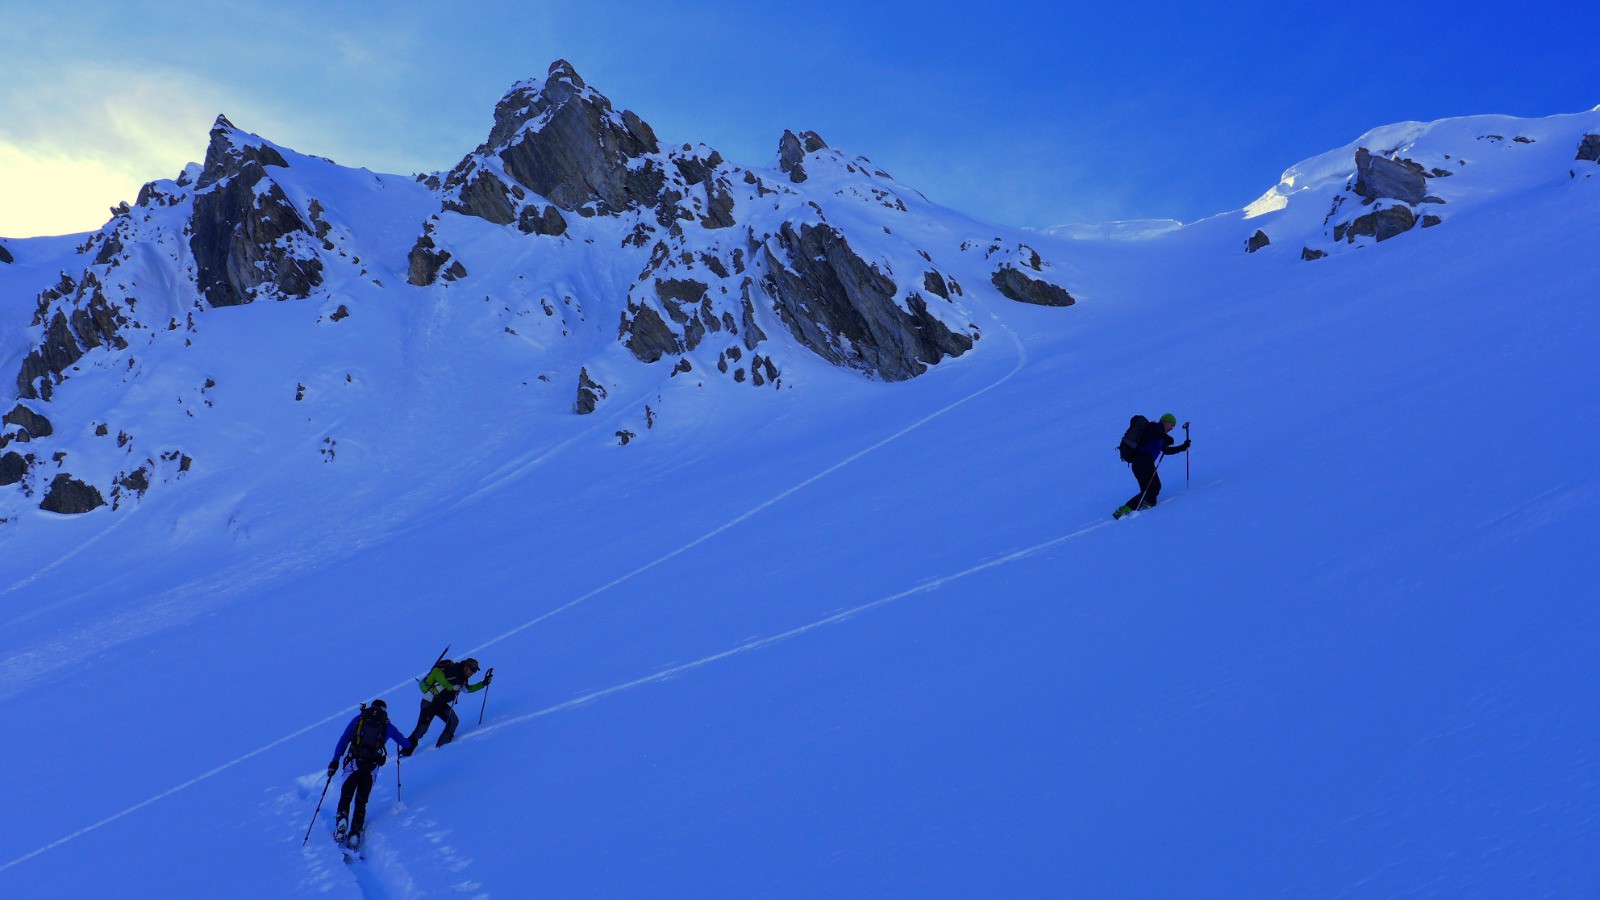 Première montée vers la crête de Pategous: poudre magique à skier sans retenue.